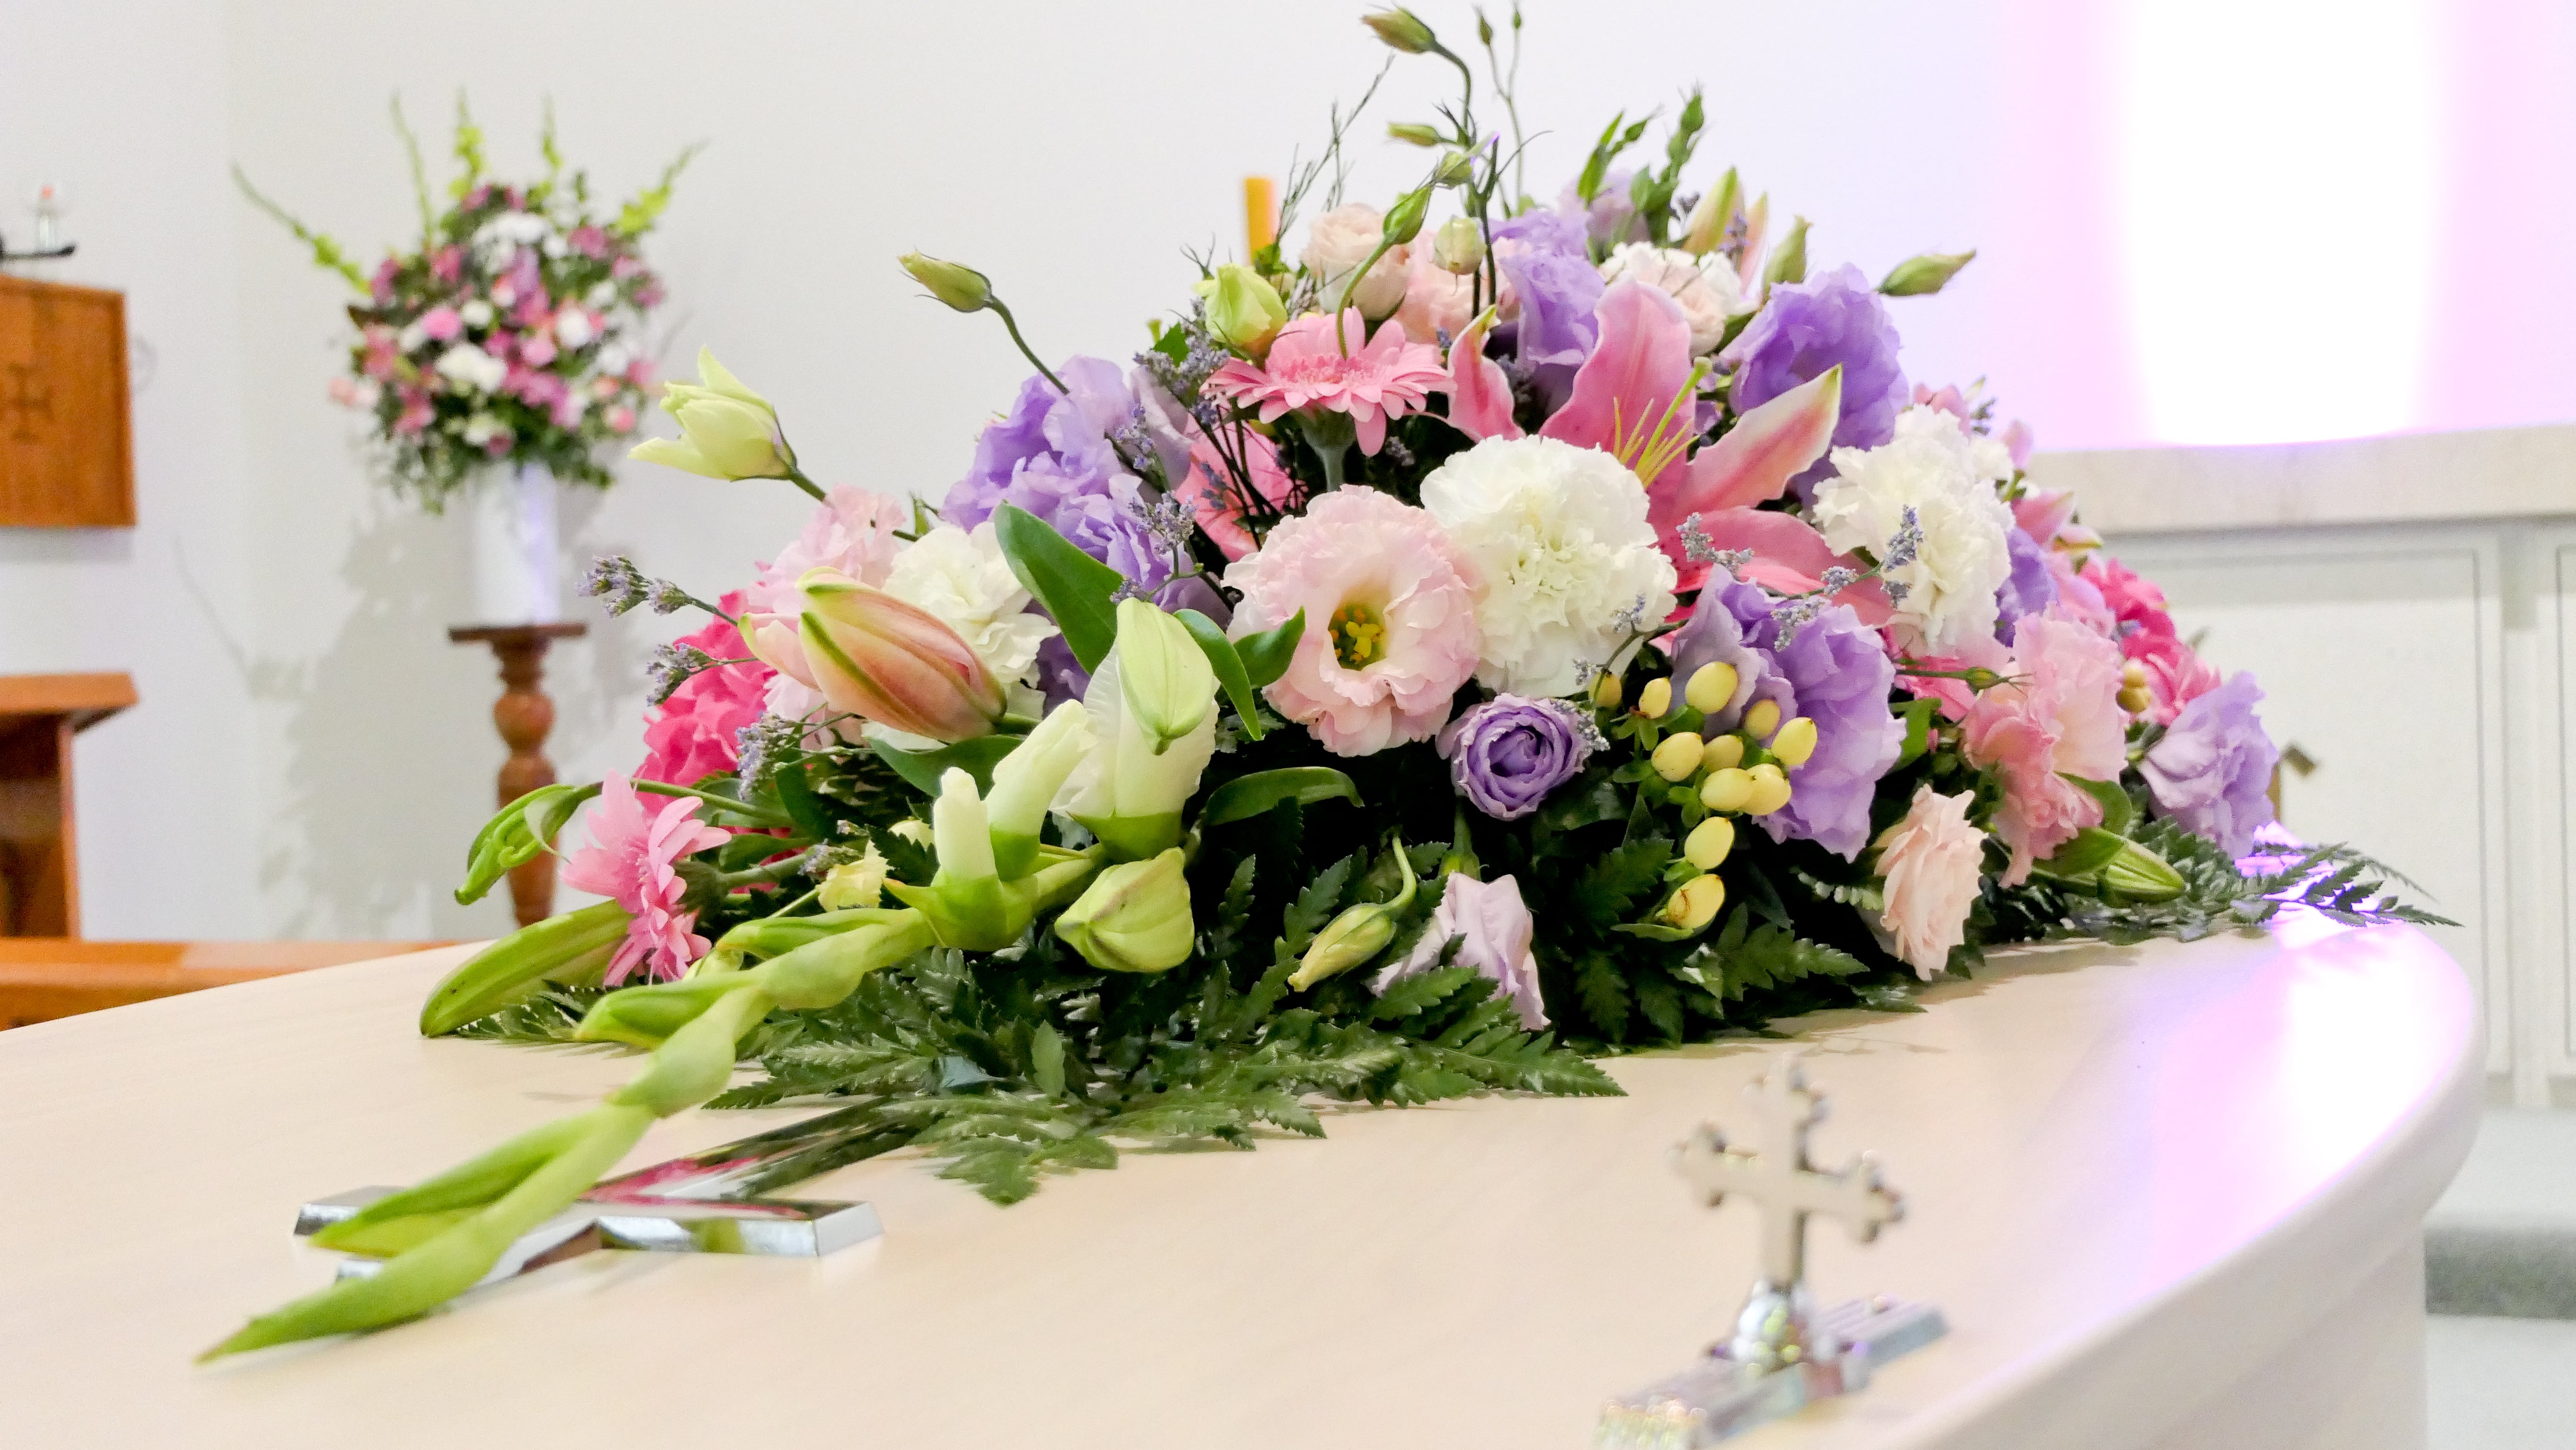 bbrooks fine flowers, Unique Sympathy & Funeral Arrangements